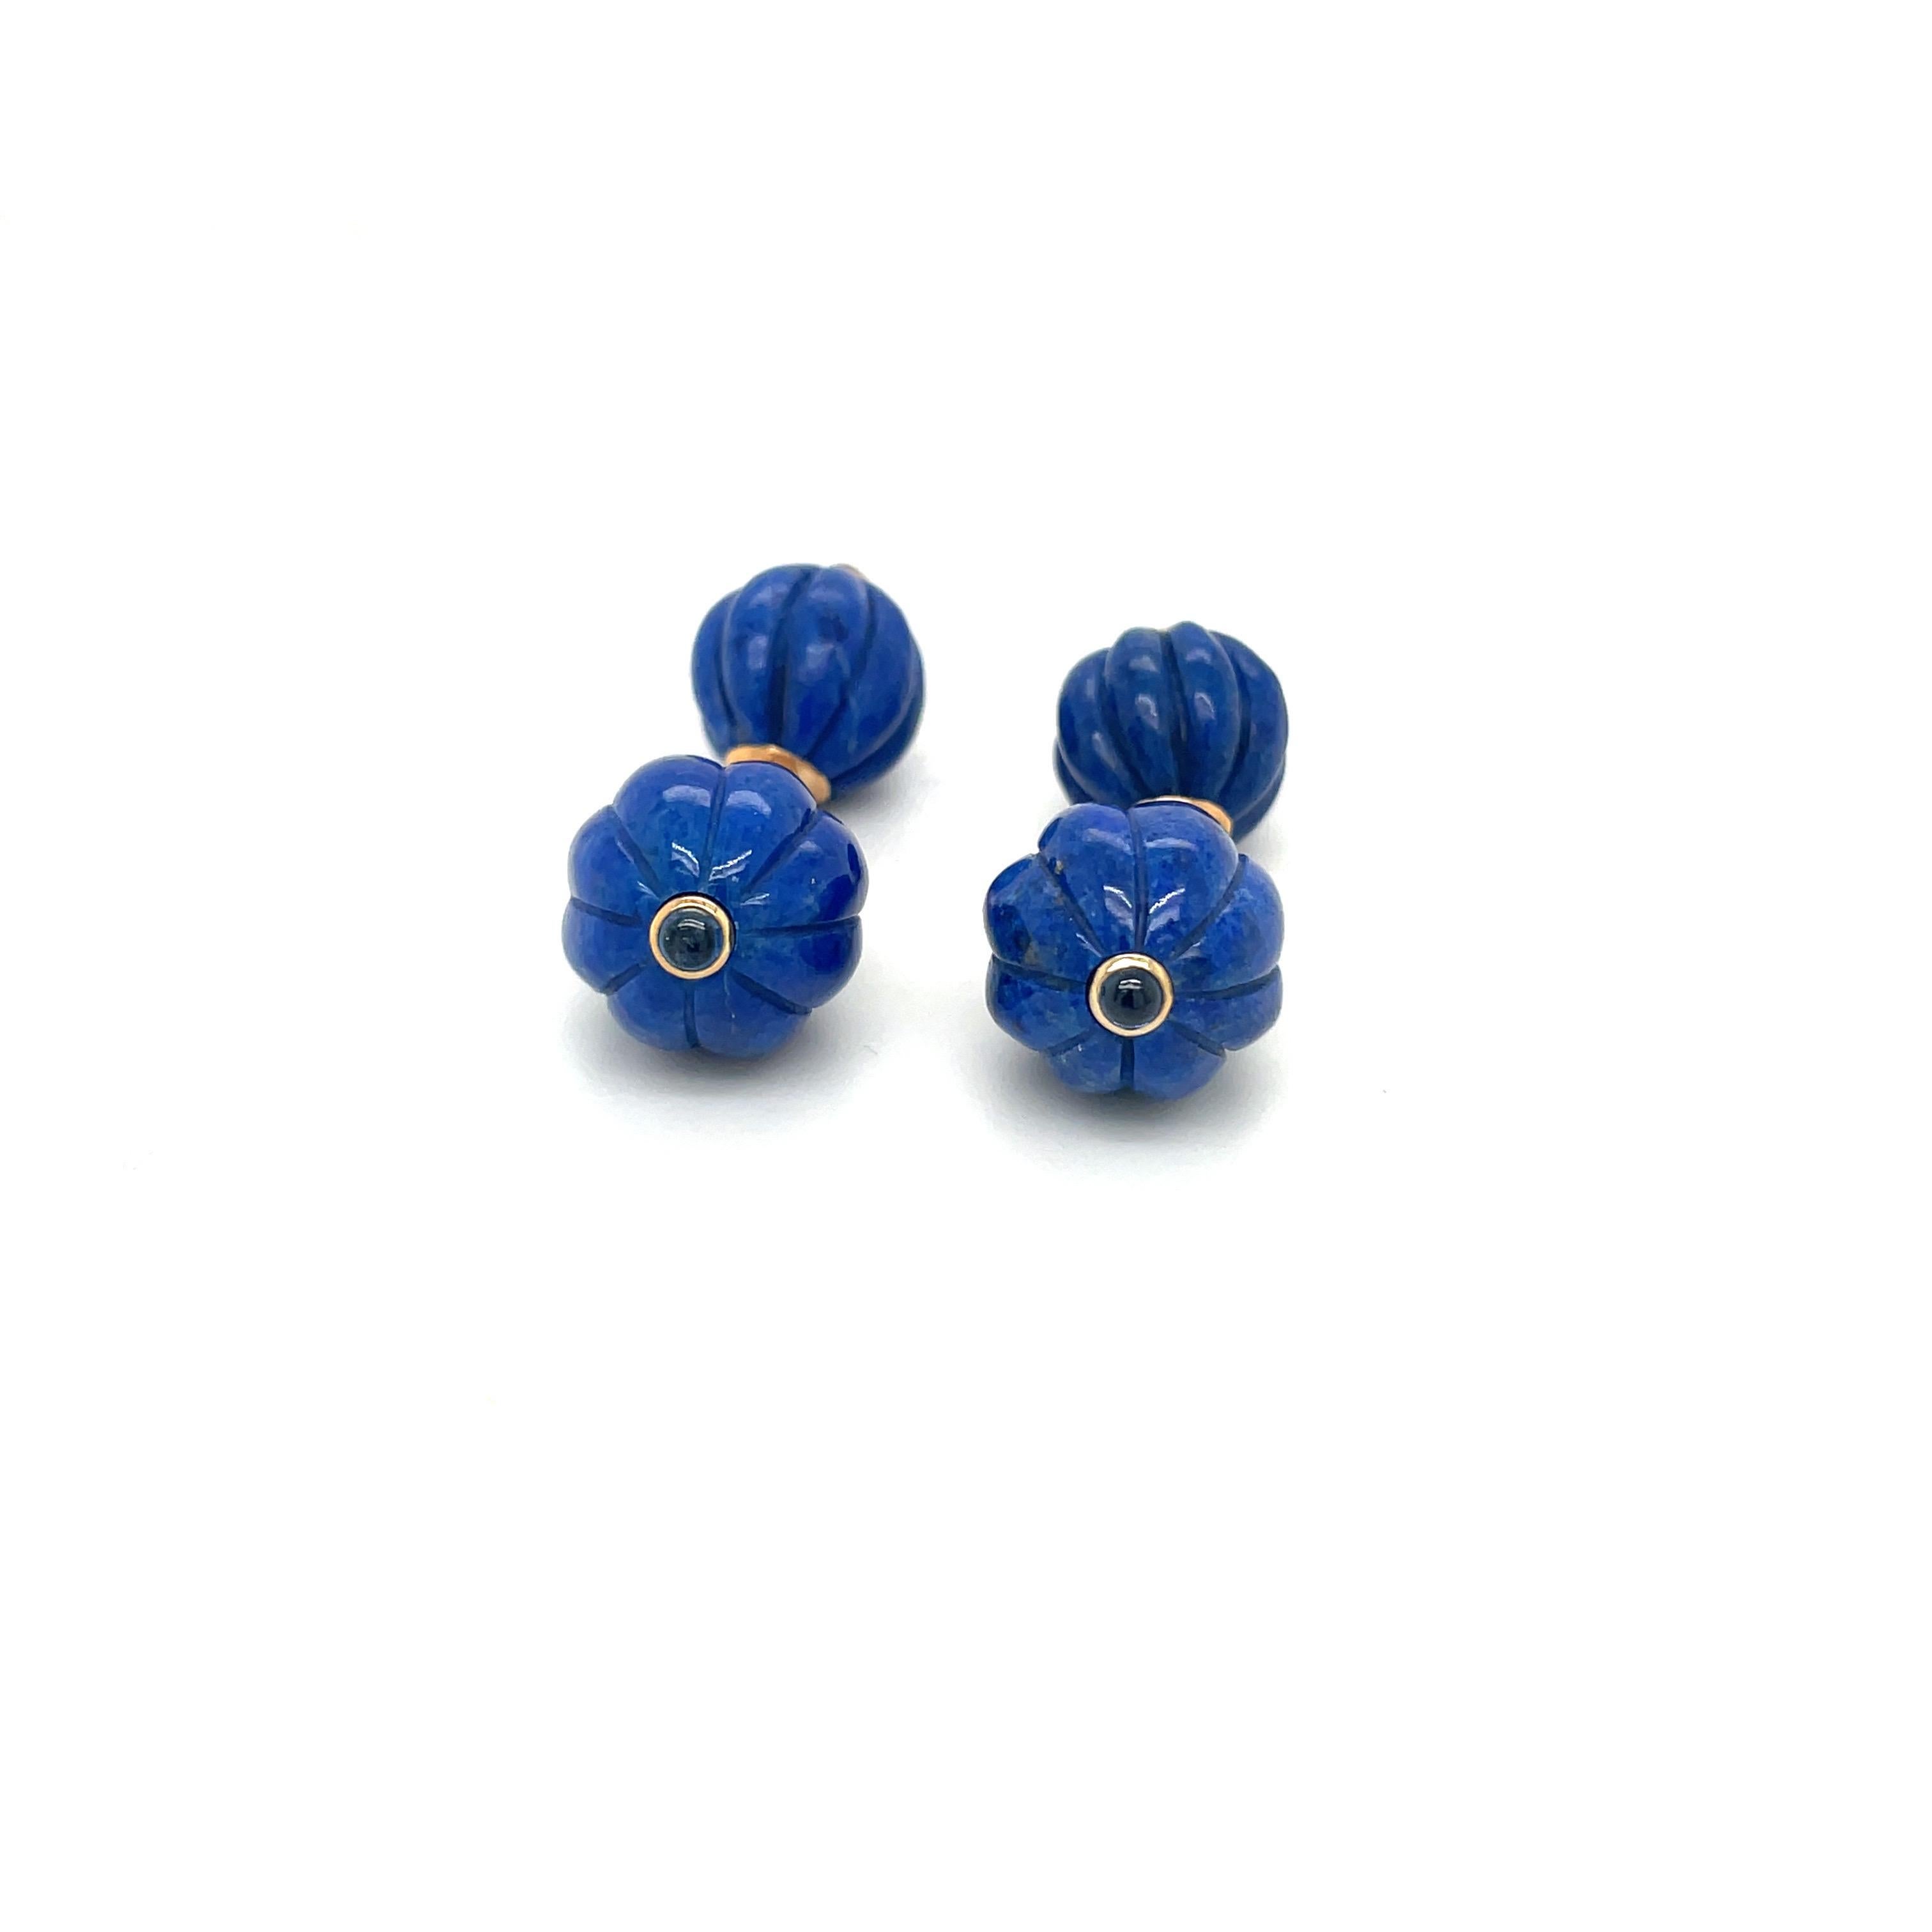 Beau poli  Lapis-lazuli  Boutons de manchette en perles cannelées. Chaque centre est serti d'un cabochon de saphir bleu. Les pierres sont maintenues ensemble par une chaîne à maillons en or 14 carats.
Estampillé Trianon 14 carats